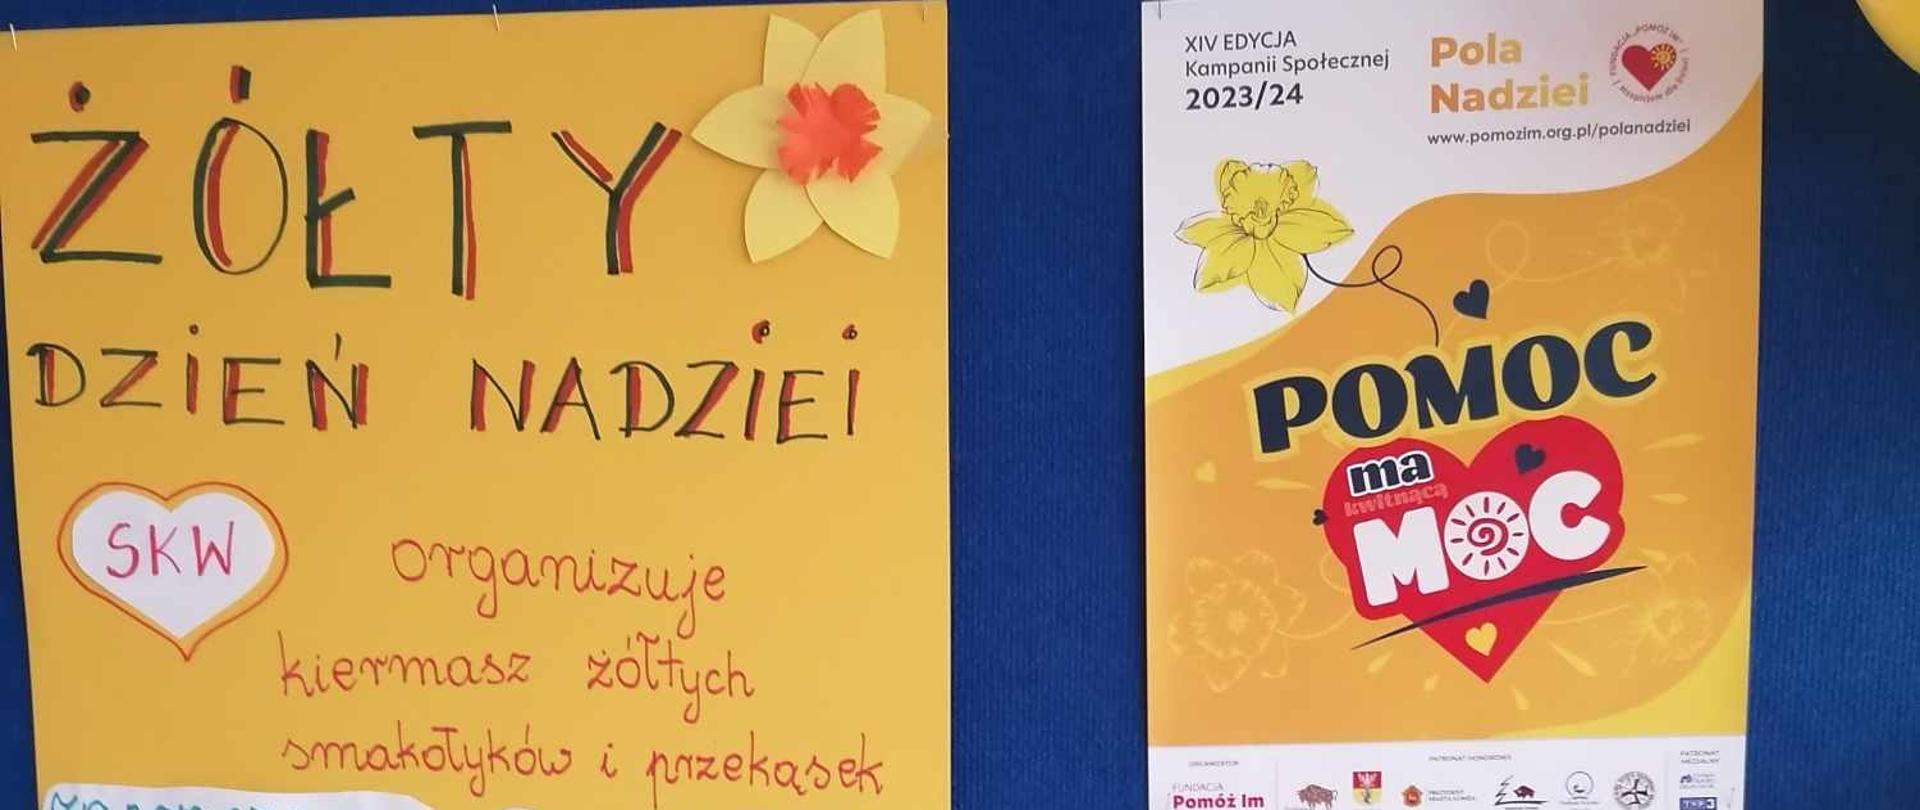 XIV edycji Kampanii Społecznej POLA NADZIEI - Szkoła Podstawowa im. Jan a Pawła II dołącza do tej akcji